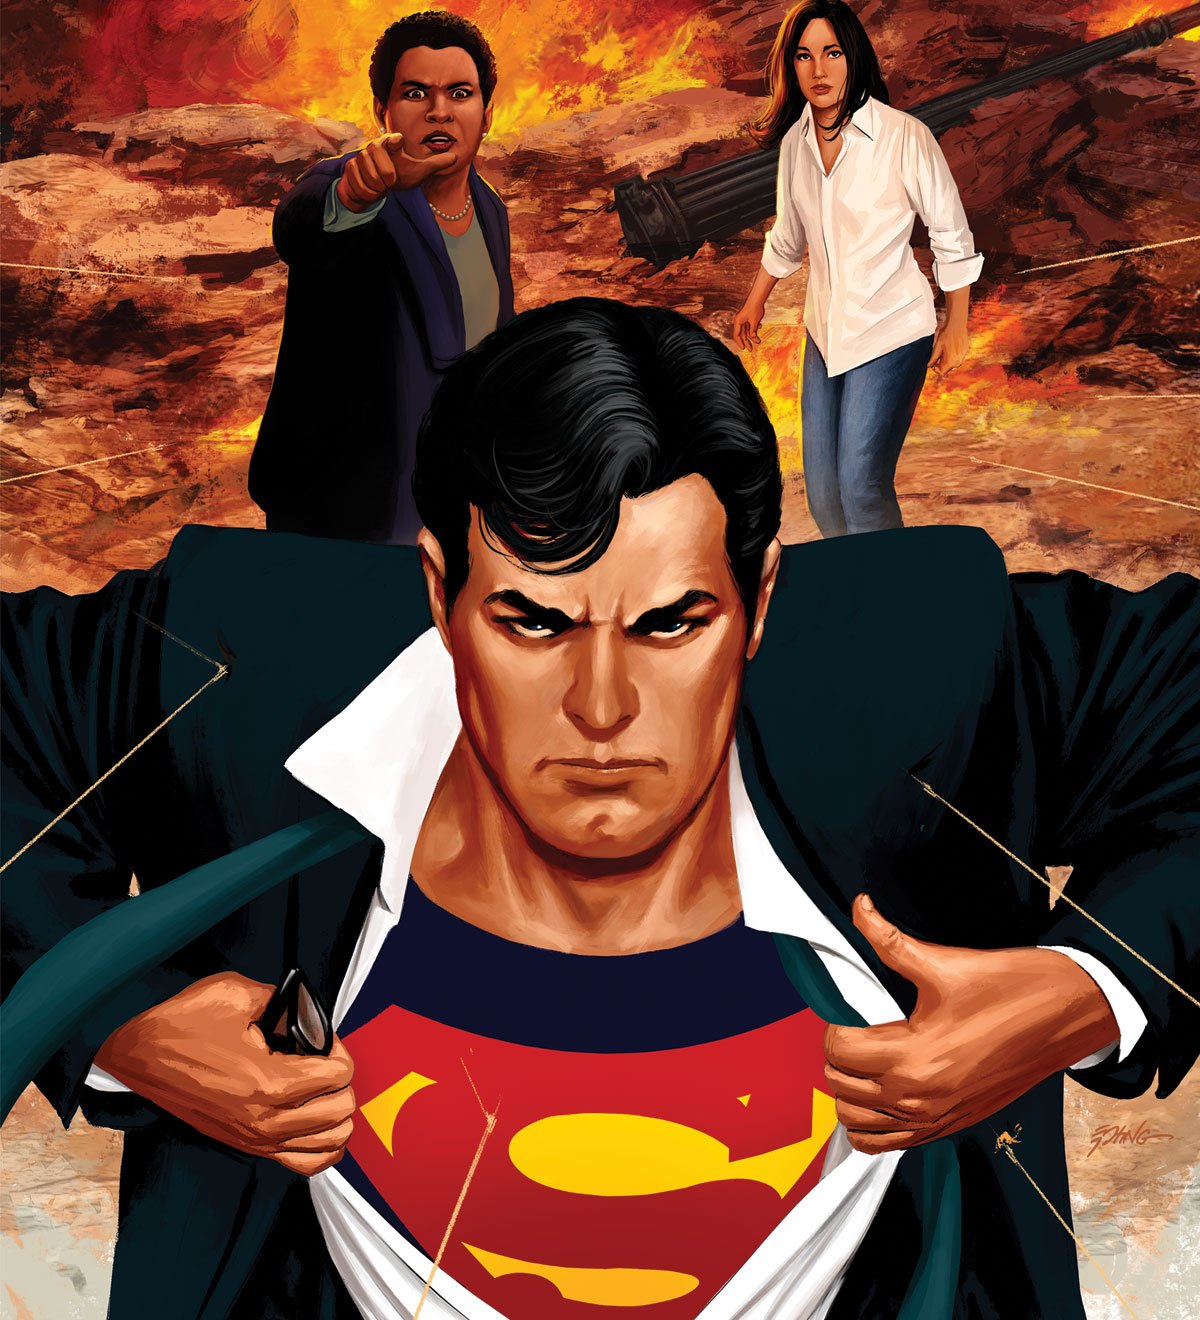 Action Comics #1009 review: Secret identities